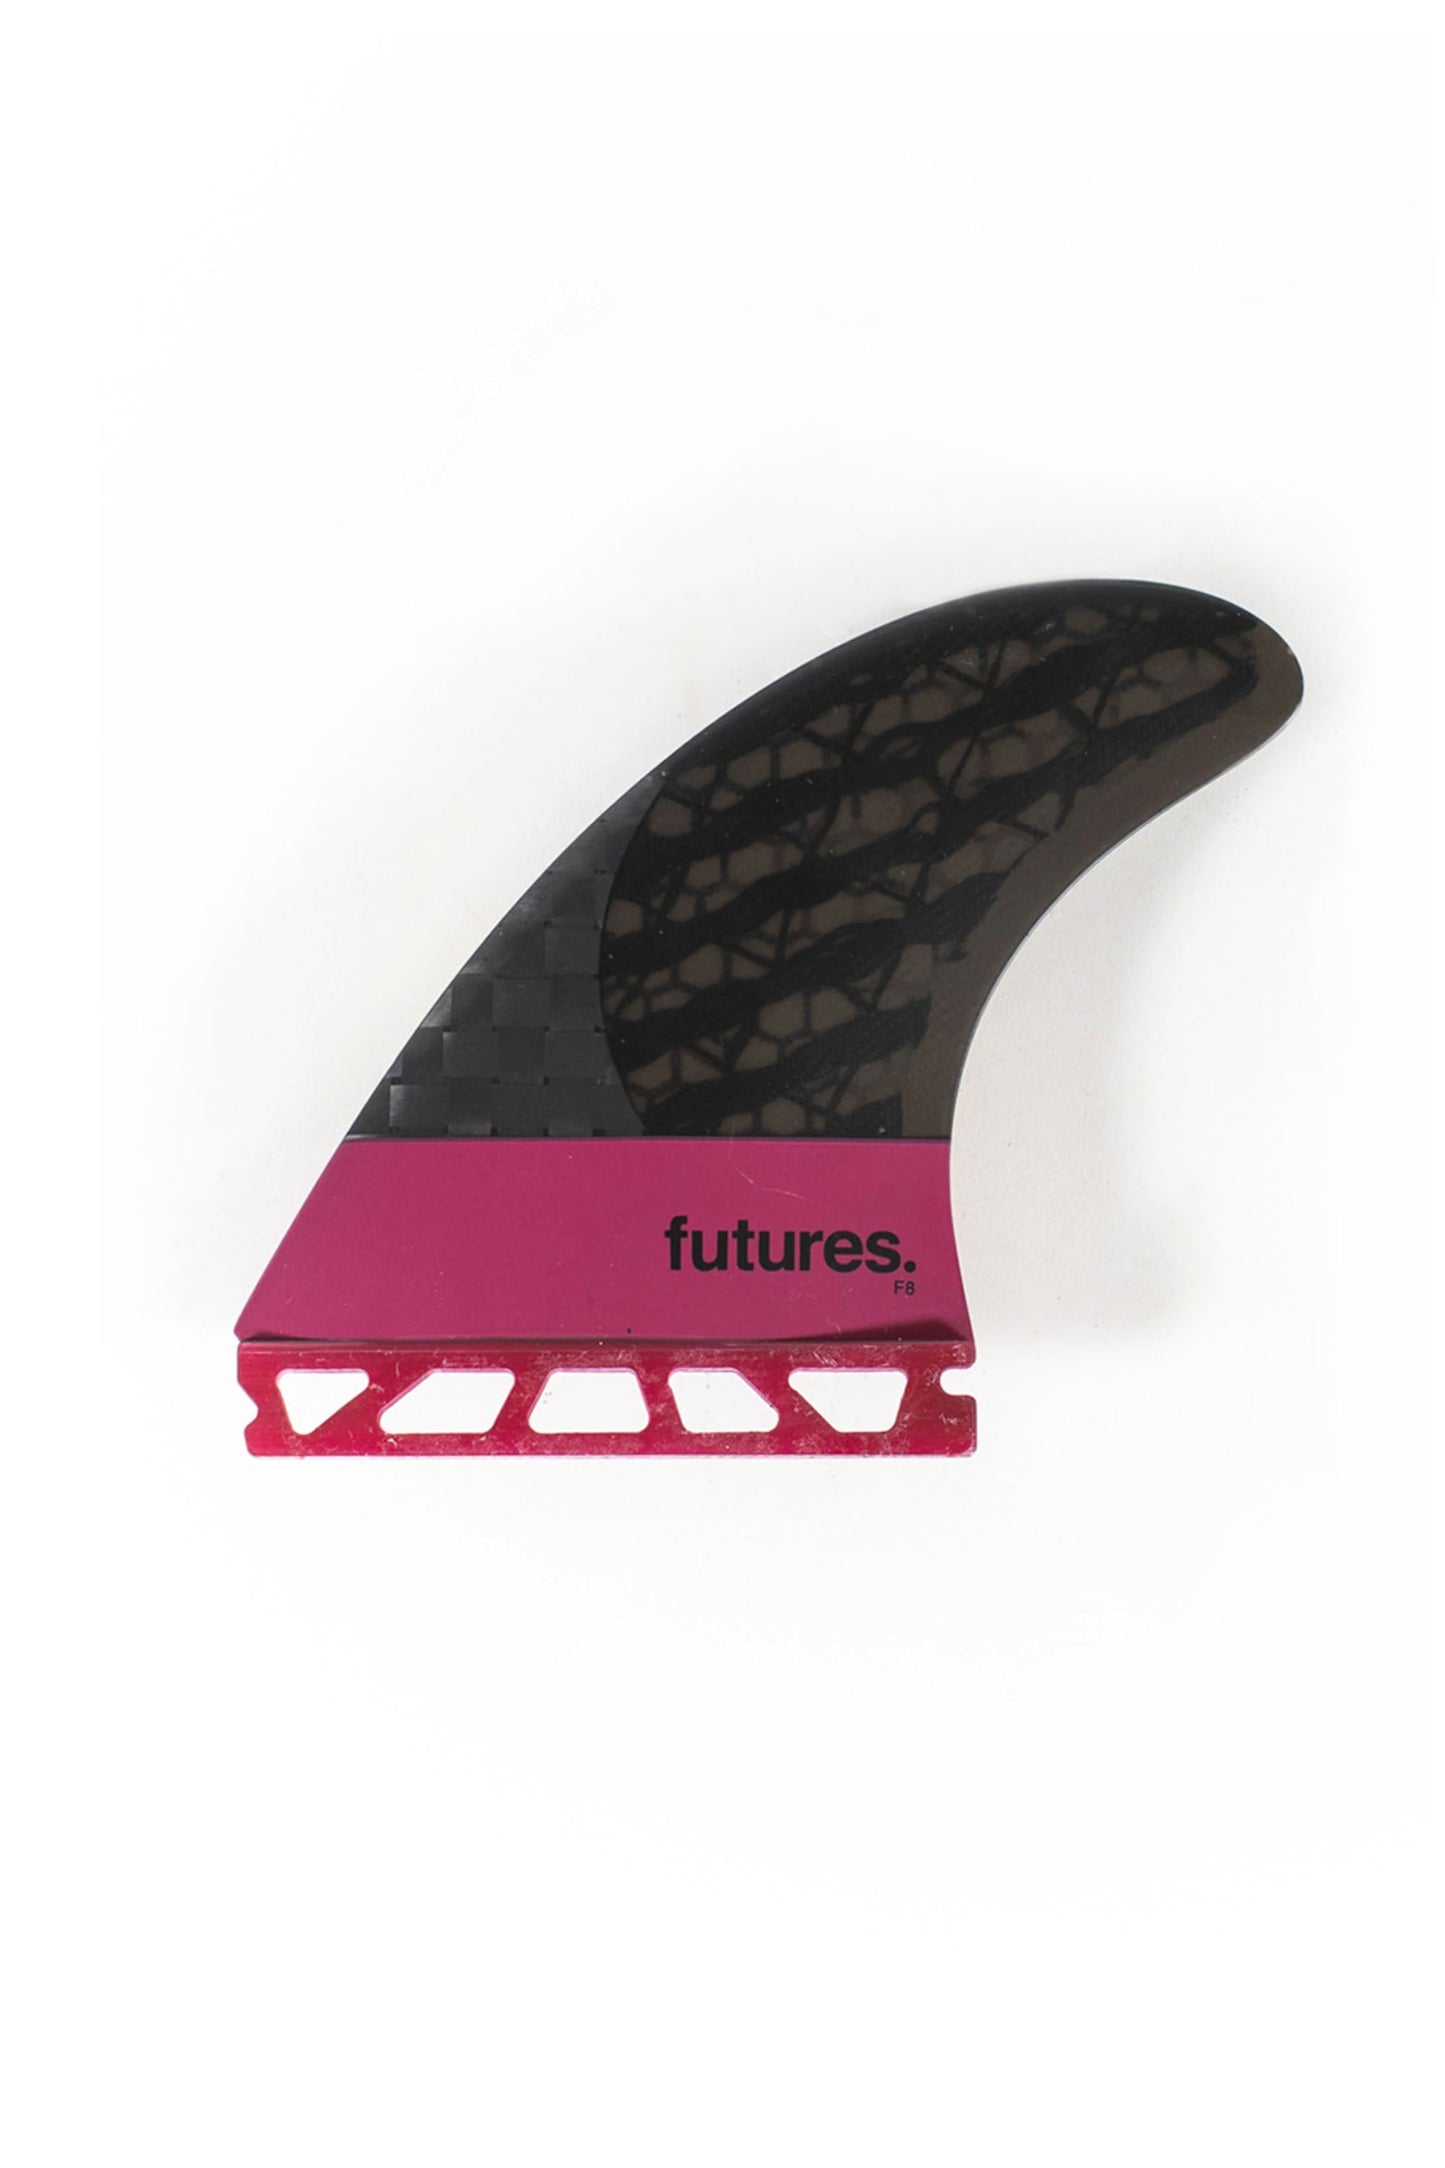 FUTURES - VII FUTURES ERIC ARAKAWA BLACKSTIX 3.0 | Shop at PUKAS 